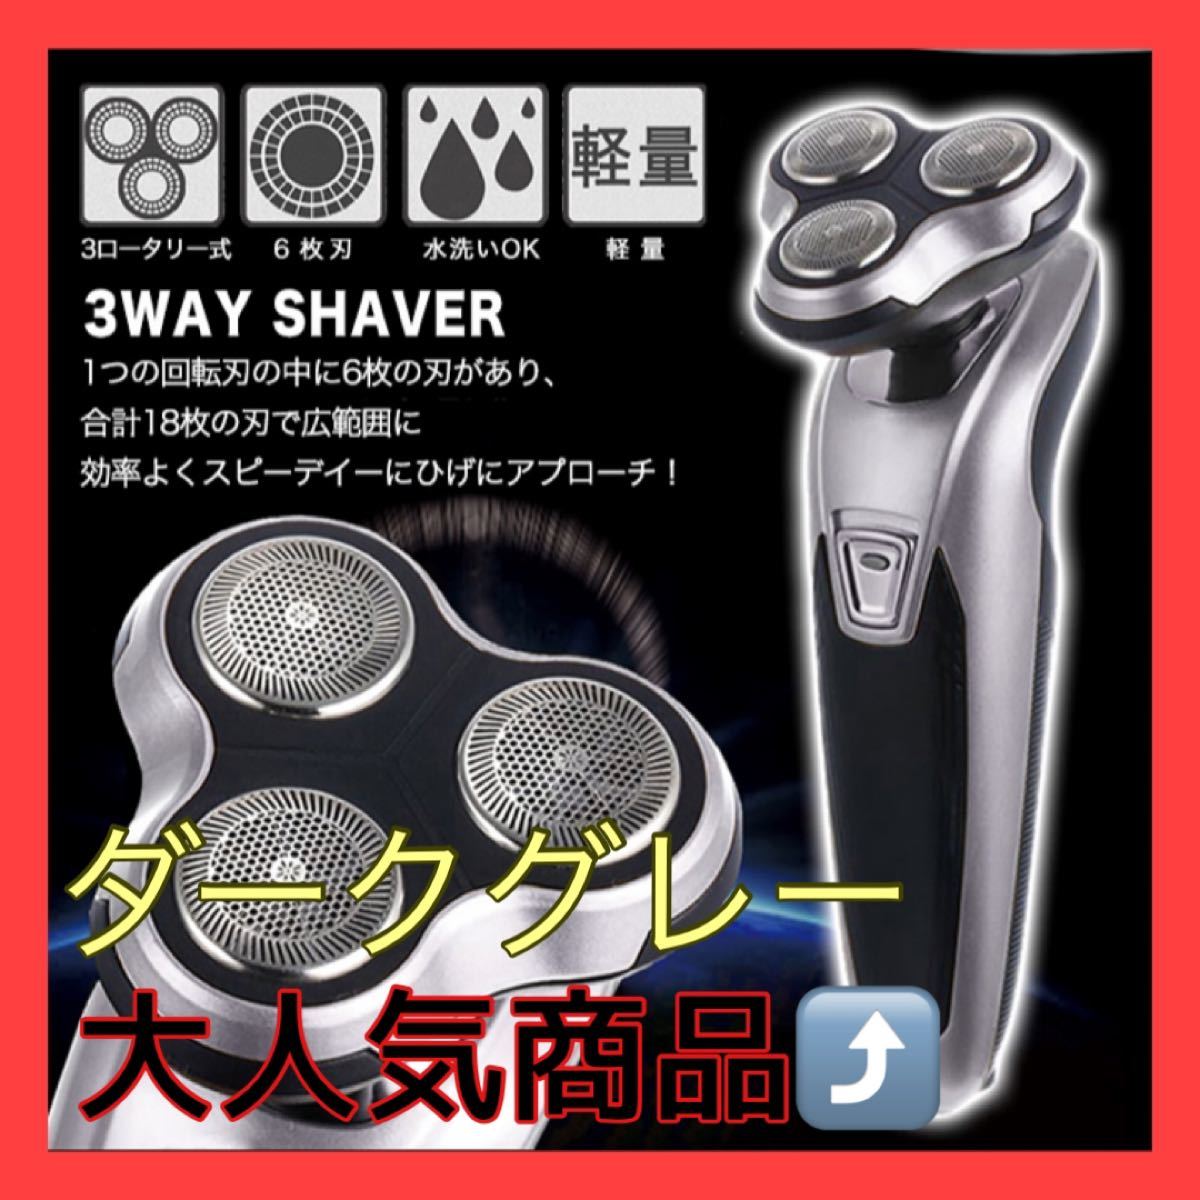 シェーバー 電動シェーバー 髭剃り 3wayシェーバー 3ロータリー式 6枚刃 水洗い可能 効率的 スピーディー ヘッド交換可能